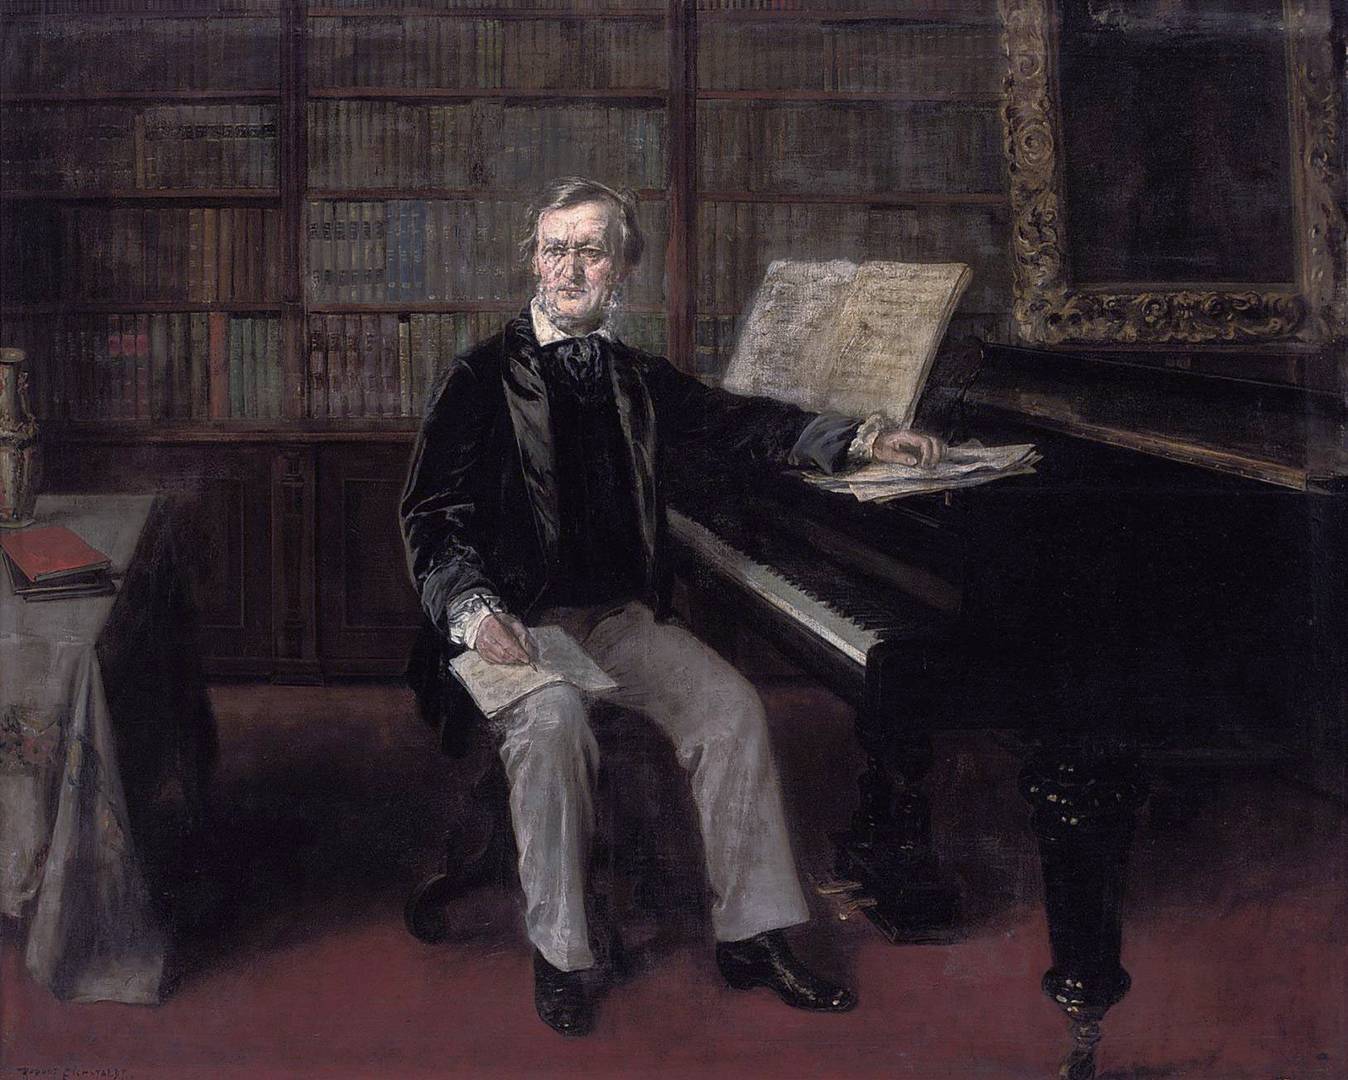 Рудольф Эйхштадт. Рихард Вагнер сочиняет музыку за своим фортепиано. XIX